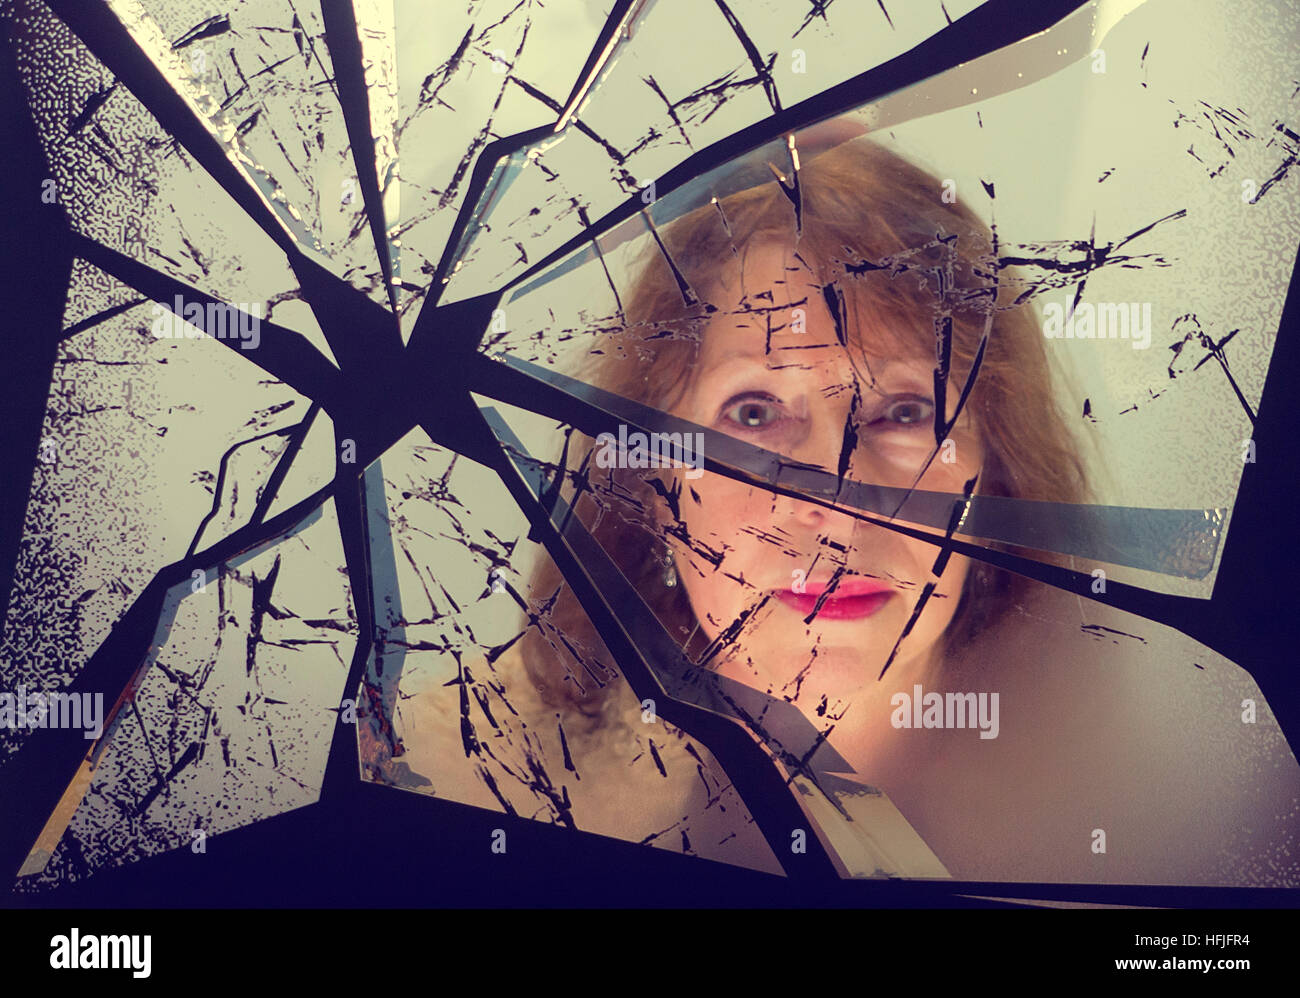 Reflet d'une femme dans un miroir cassé Banque D'Images